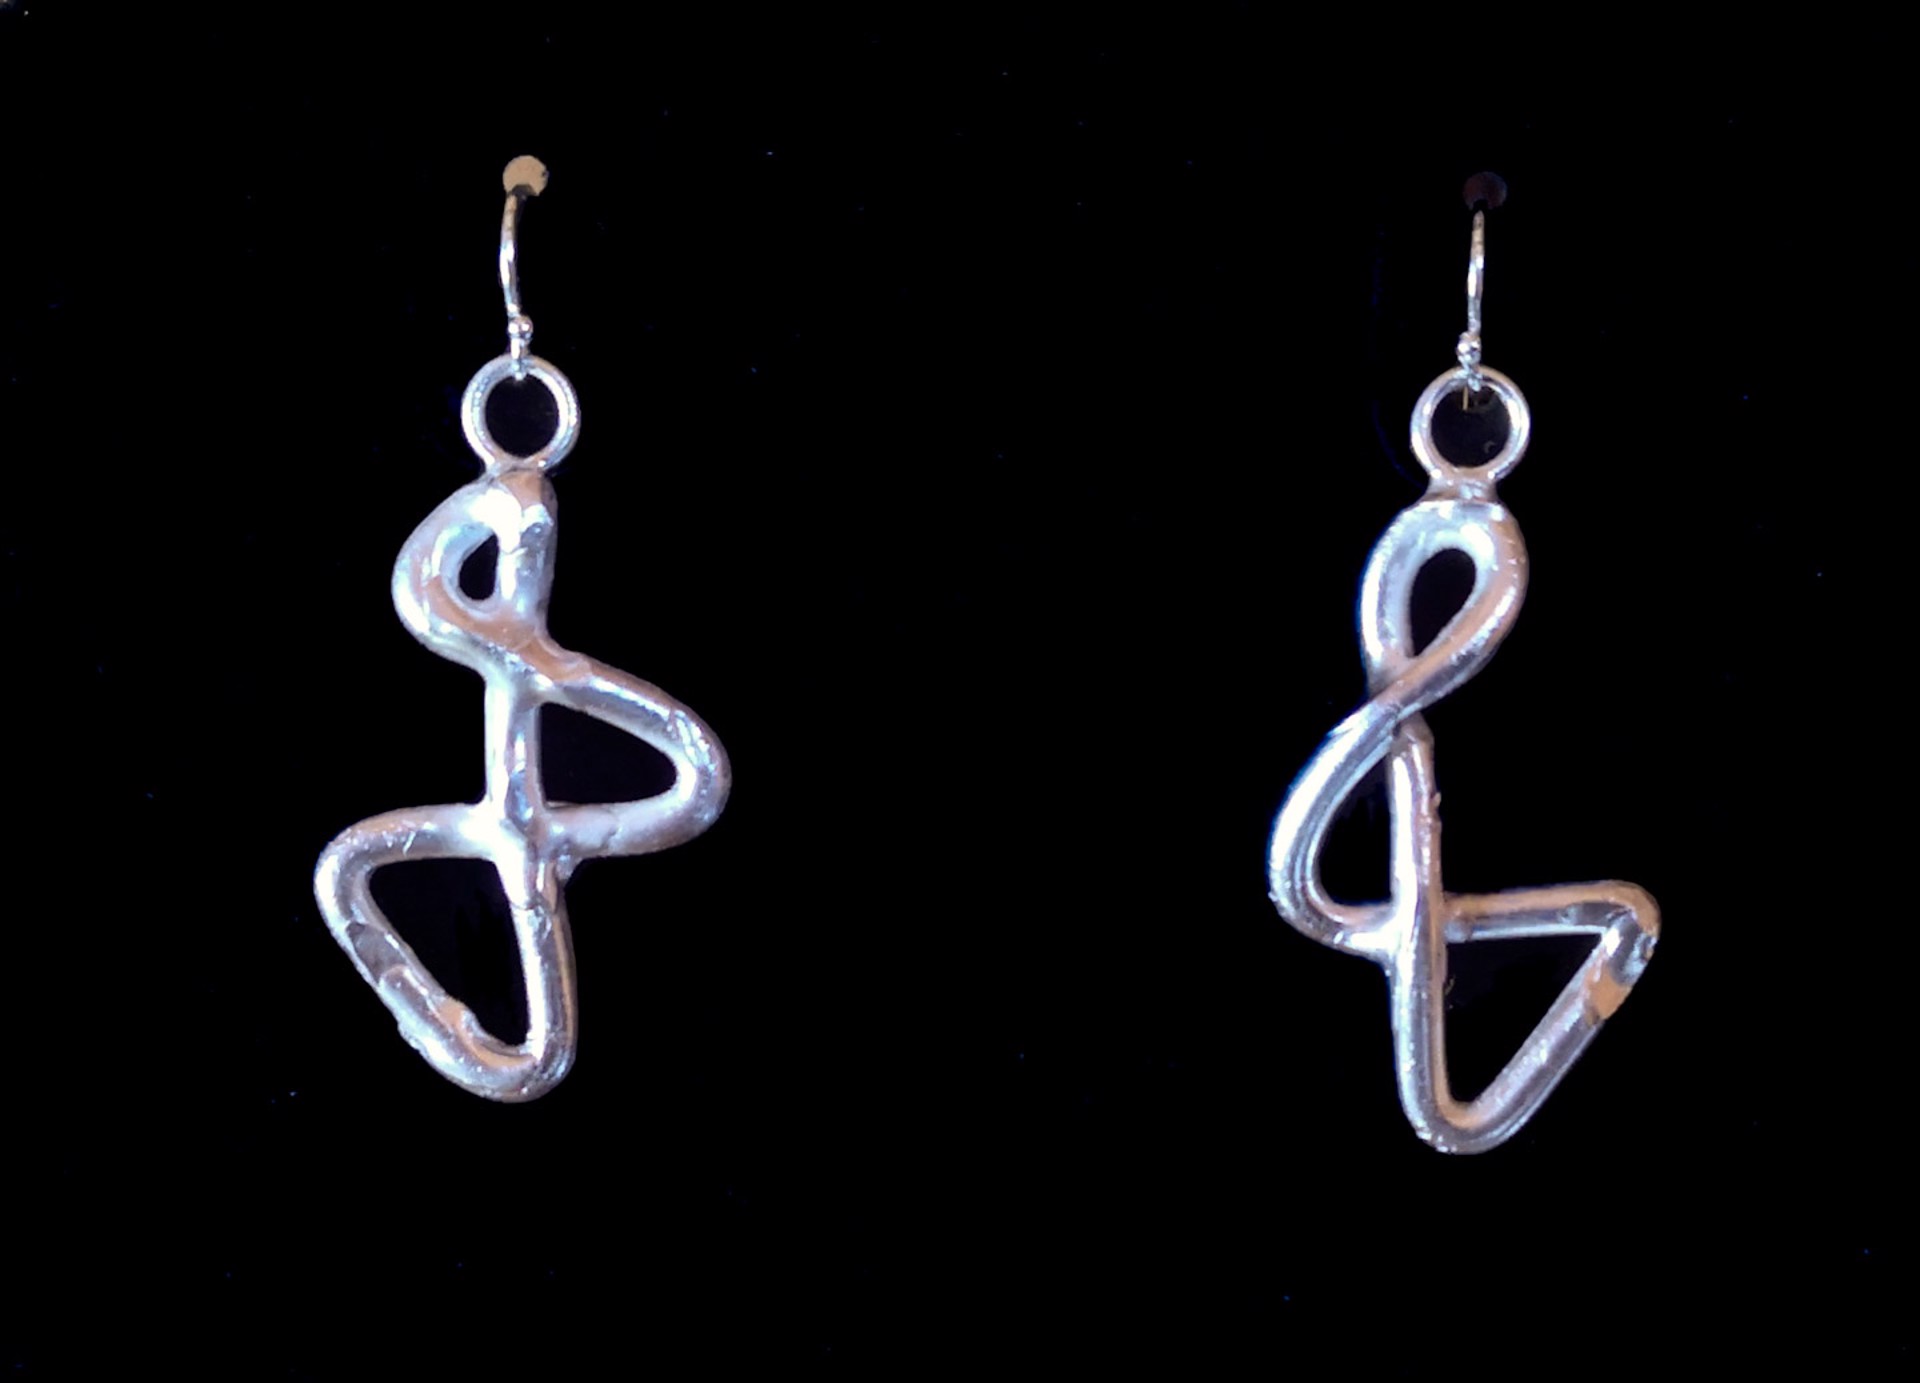 Tendrils Infinity Earrings by Elise Muller